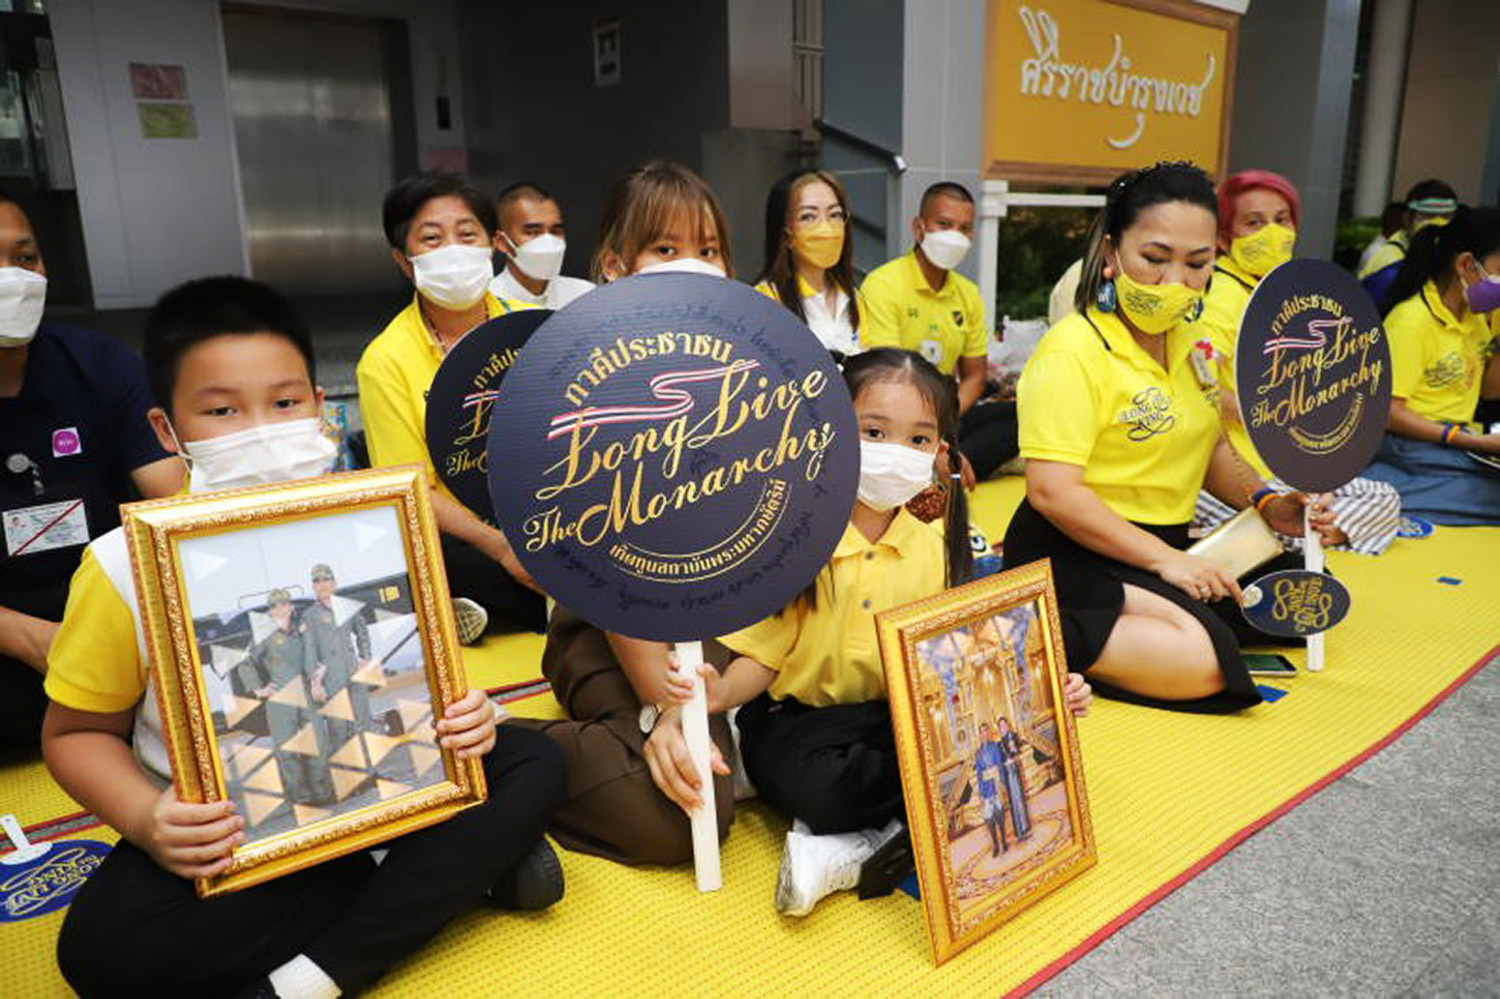 Король Таиланда открыл новый госпиталь в Бангкоке